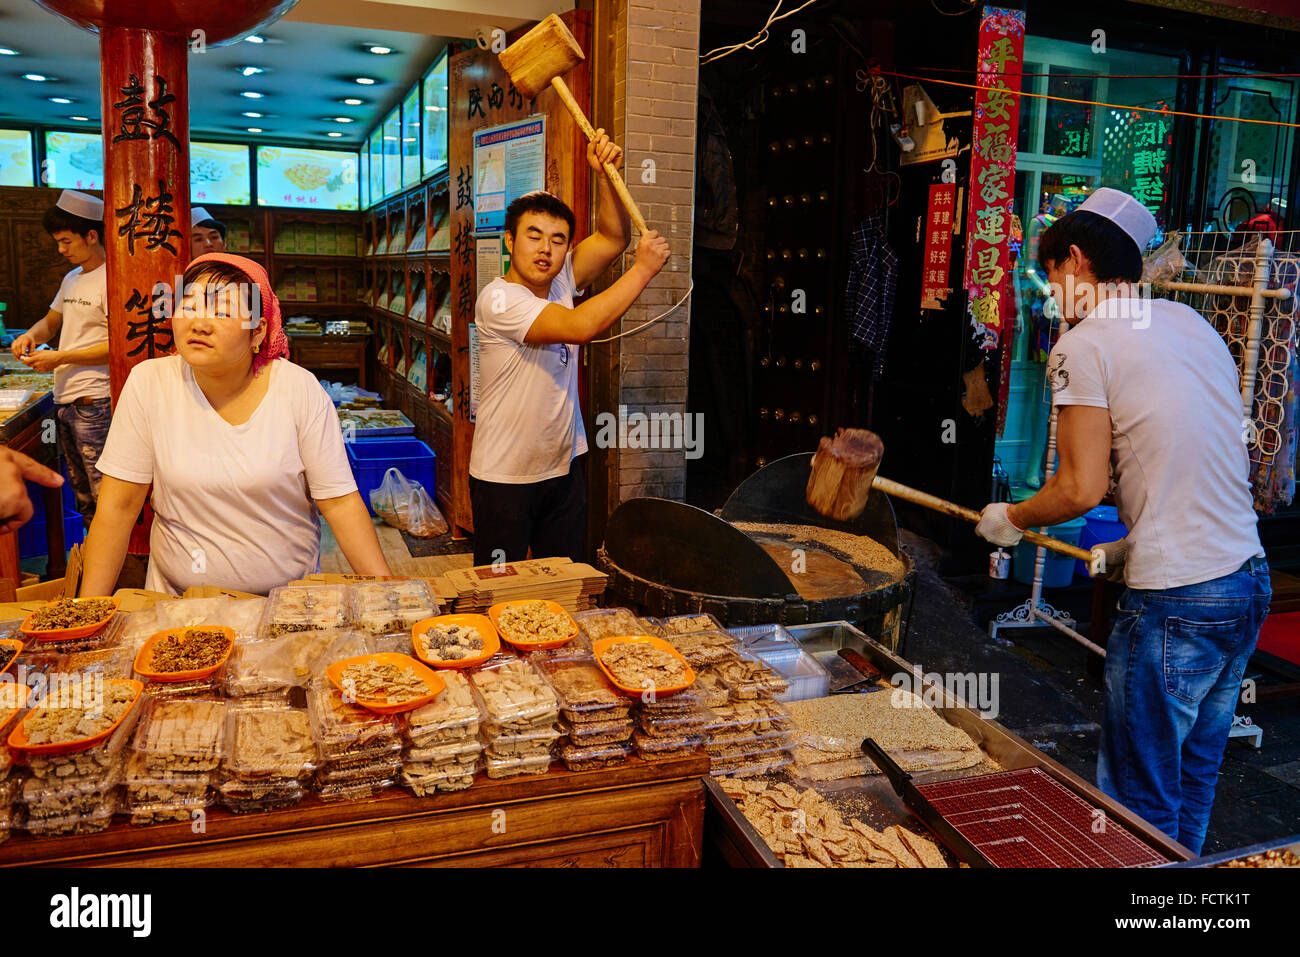 Chine, province du Shaanxi, Xi'an, Hui quartier, marché alimentaire, nougat shop Banque D'Images